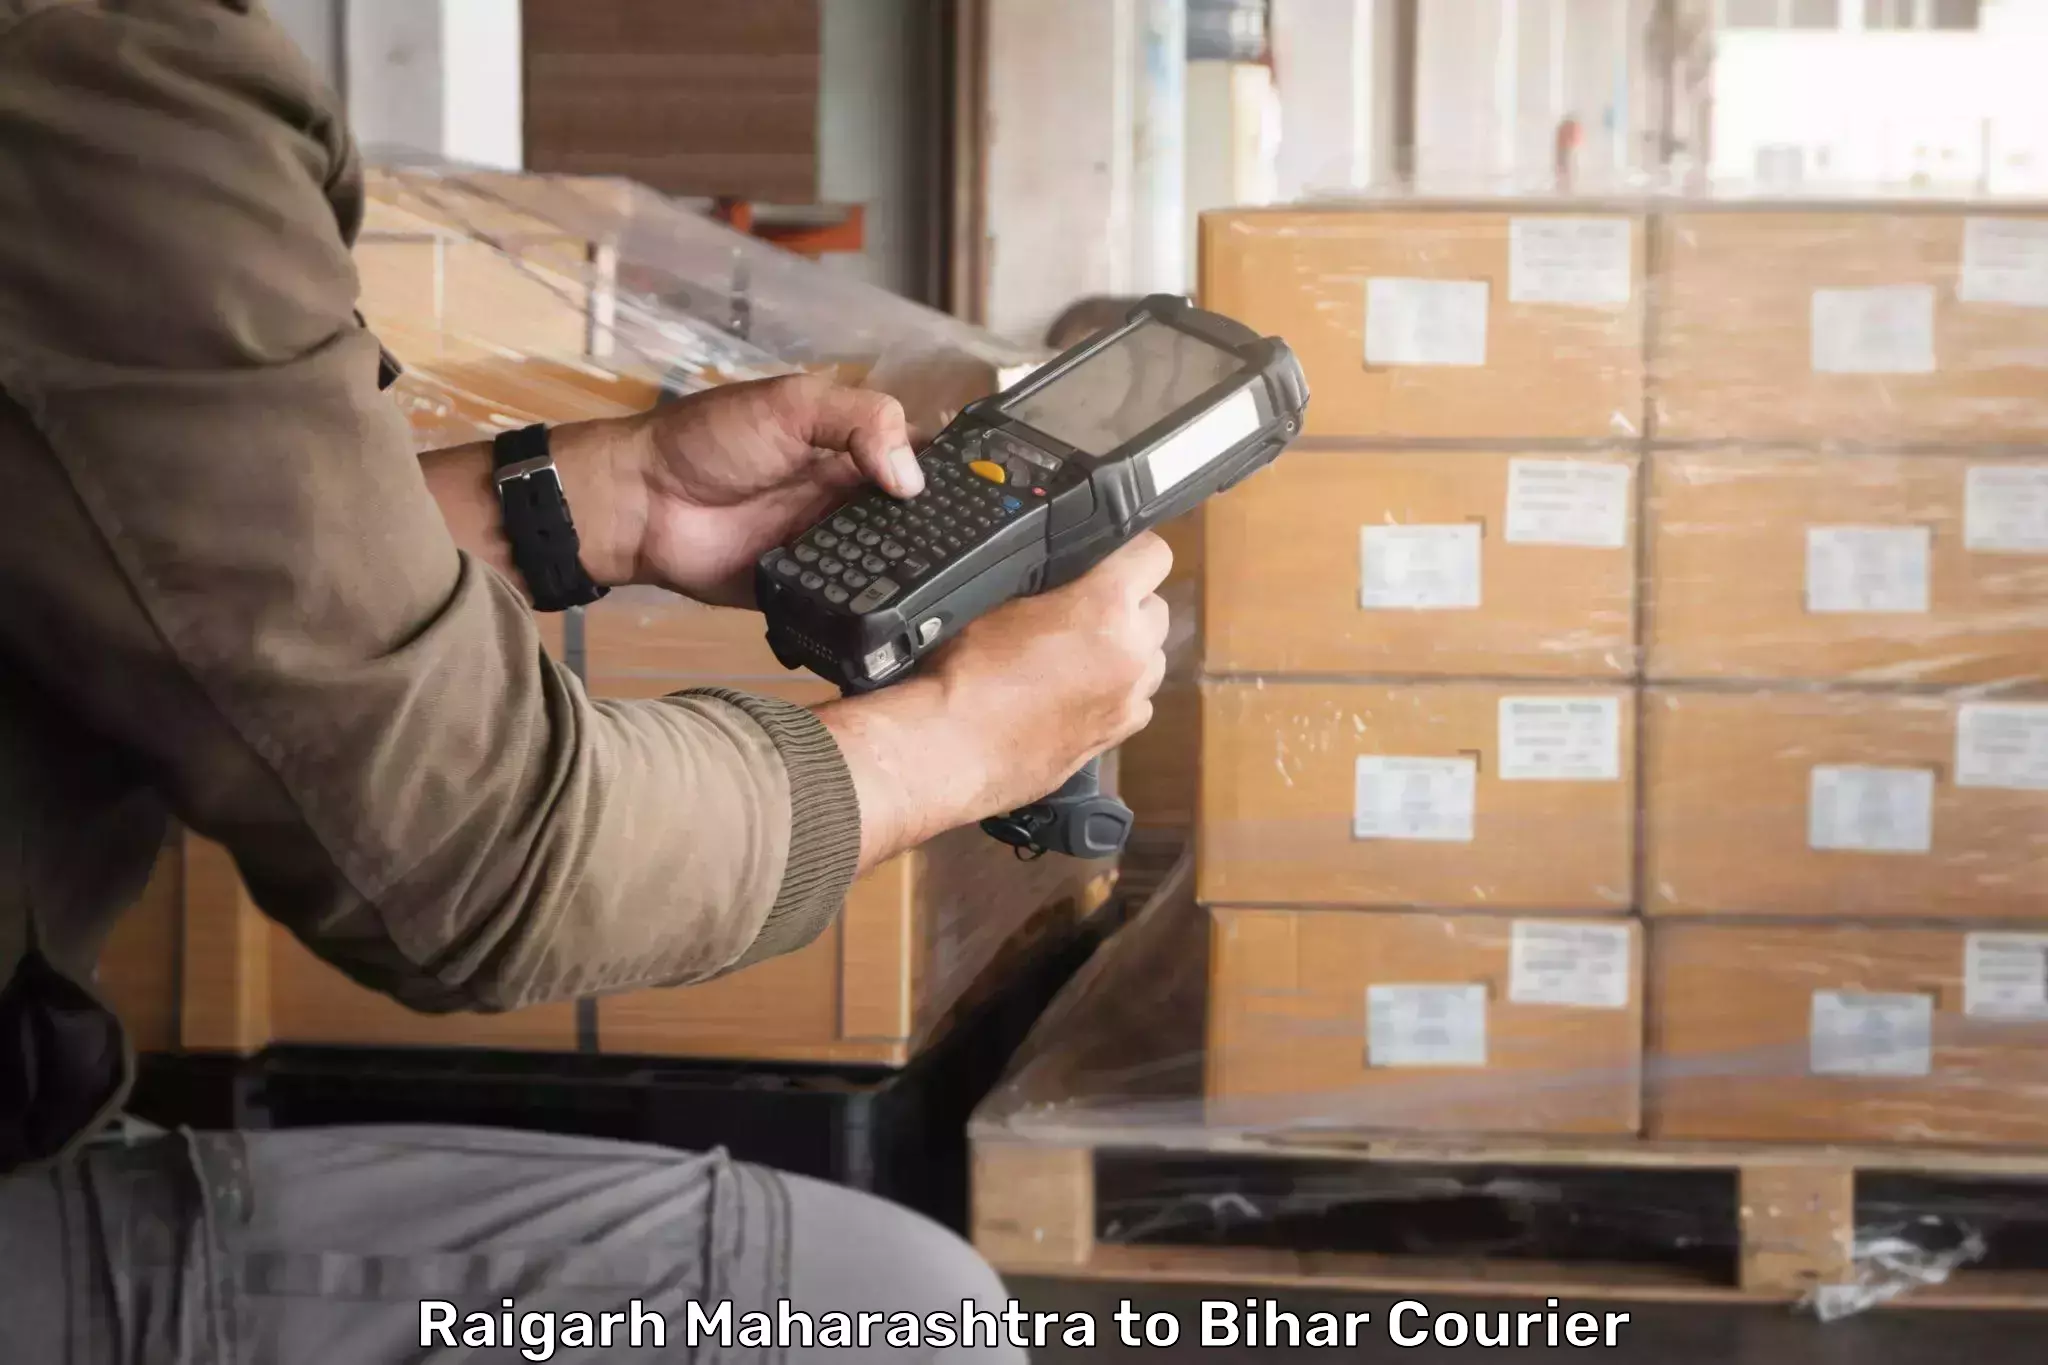 On-call courier service Raigarh Maharashtra to Hajipur Vaishali